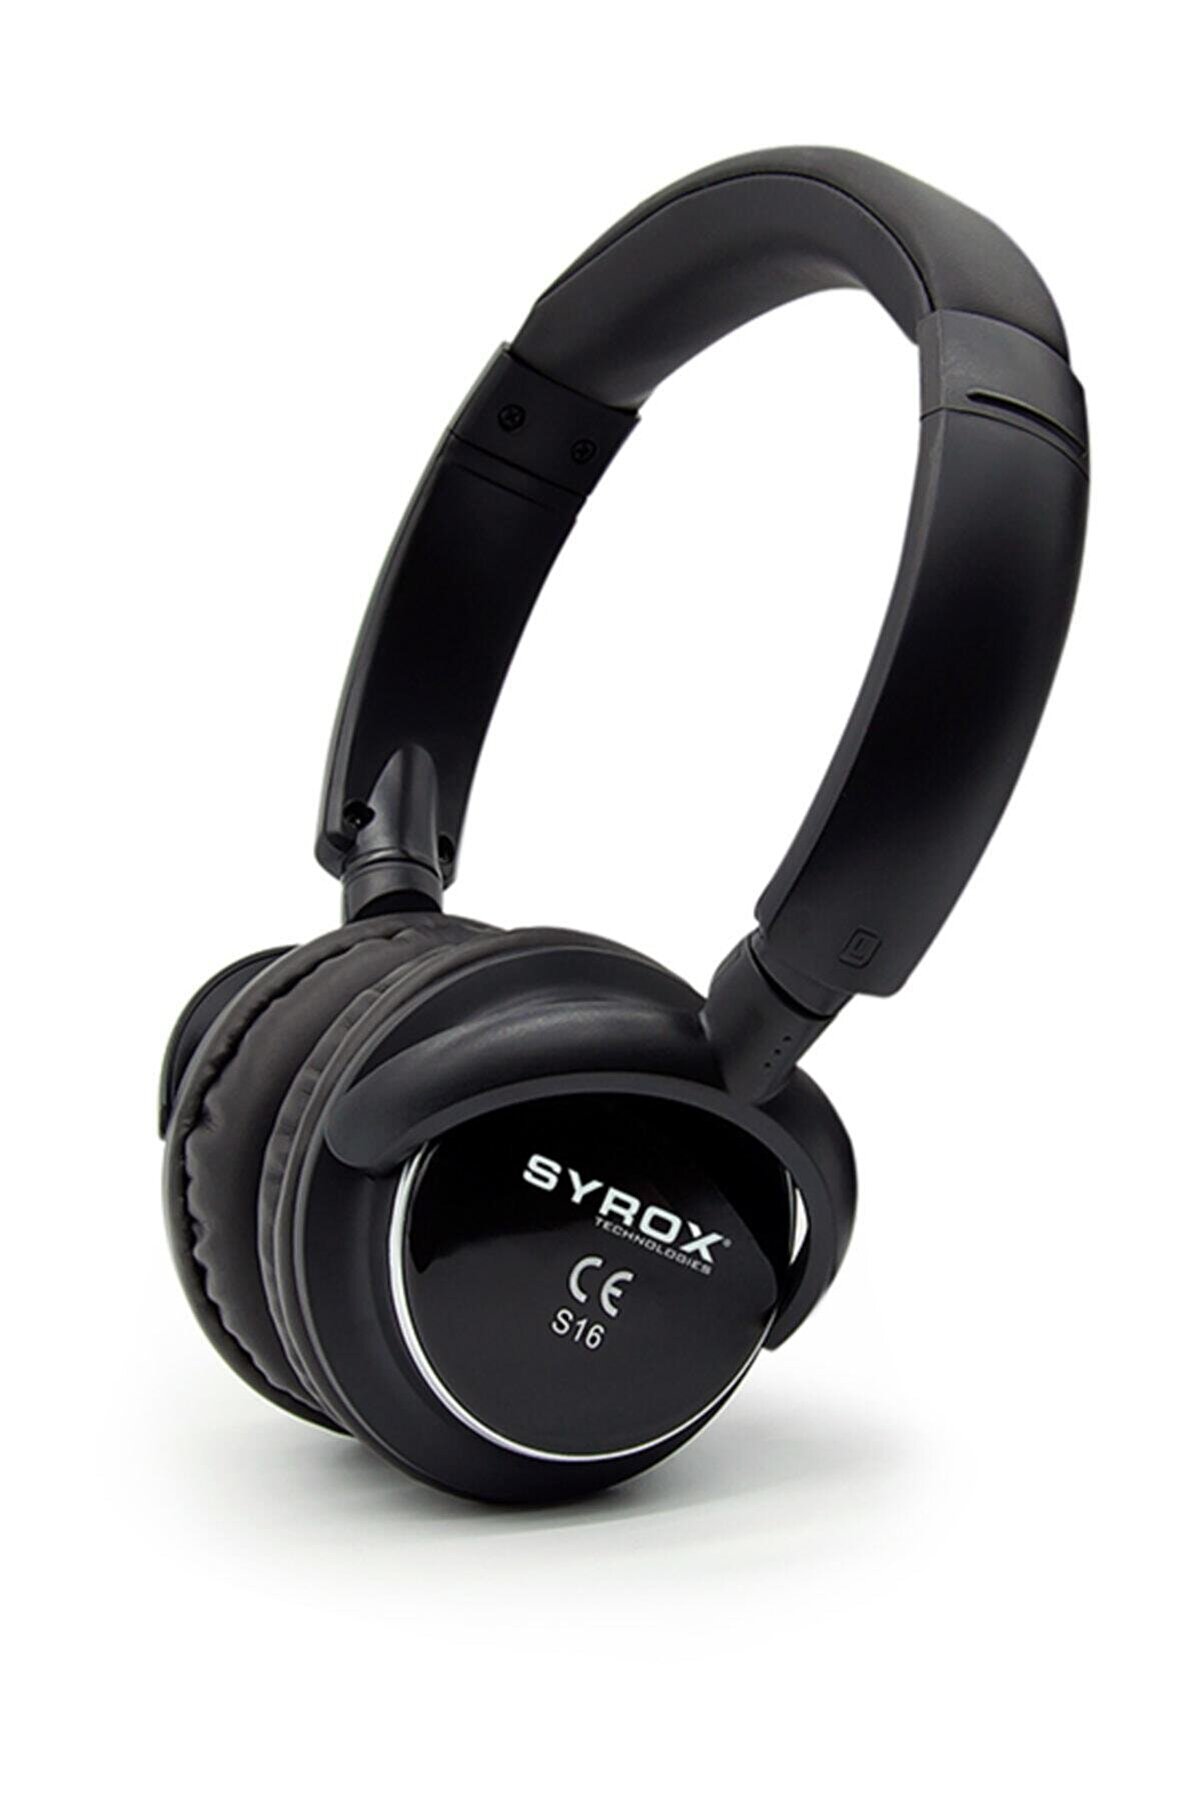 Syrox Kulaküstü Kablosuz Bluetooth Kulaklık Hafıza Kartı Girişli S16 Siyah